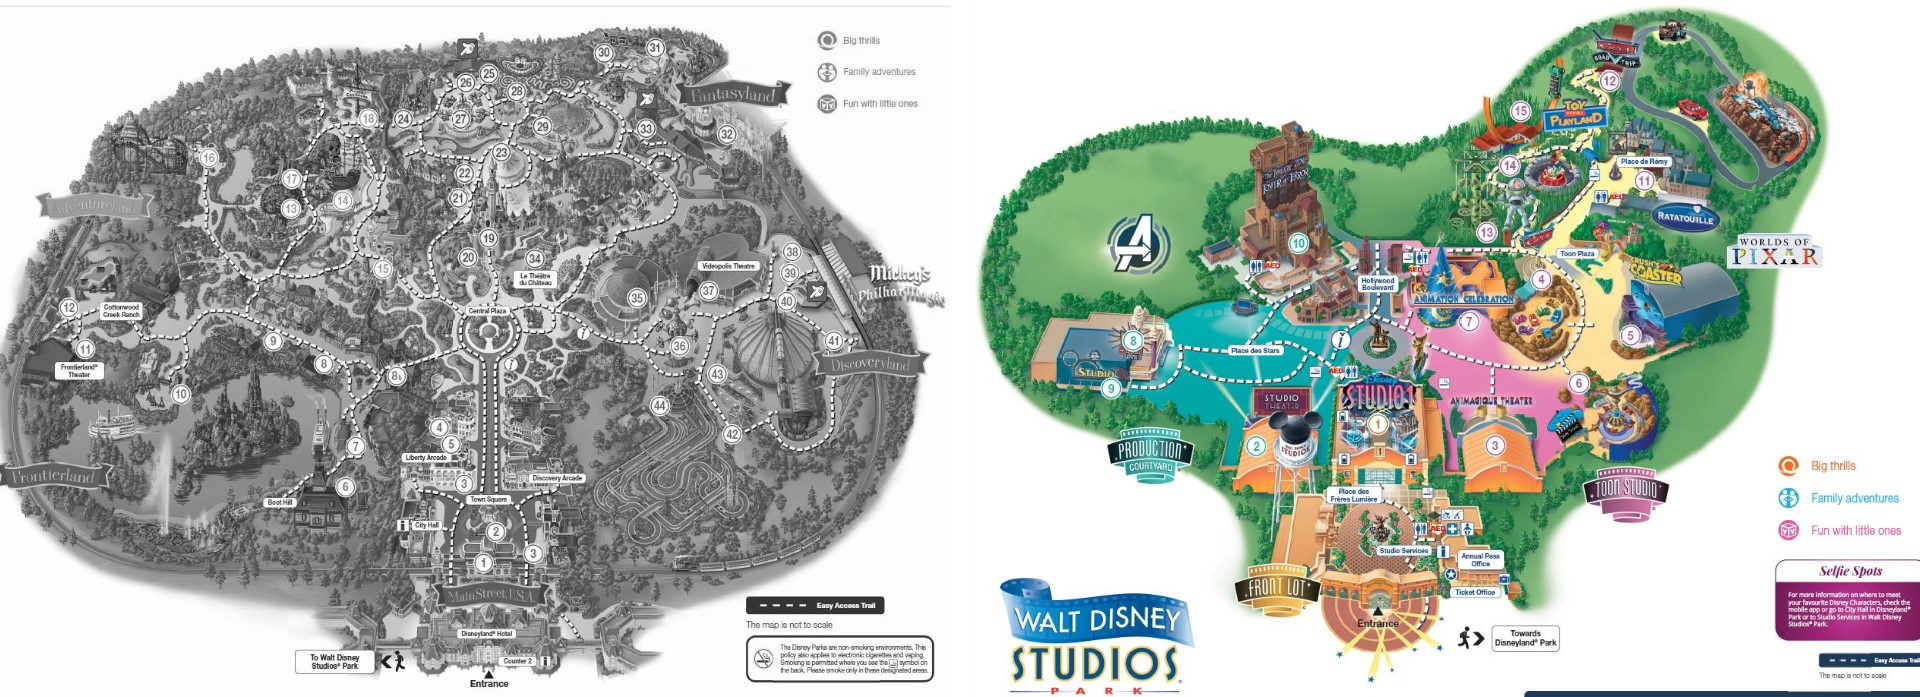 Disney Studio